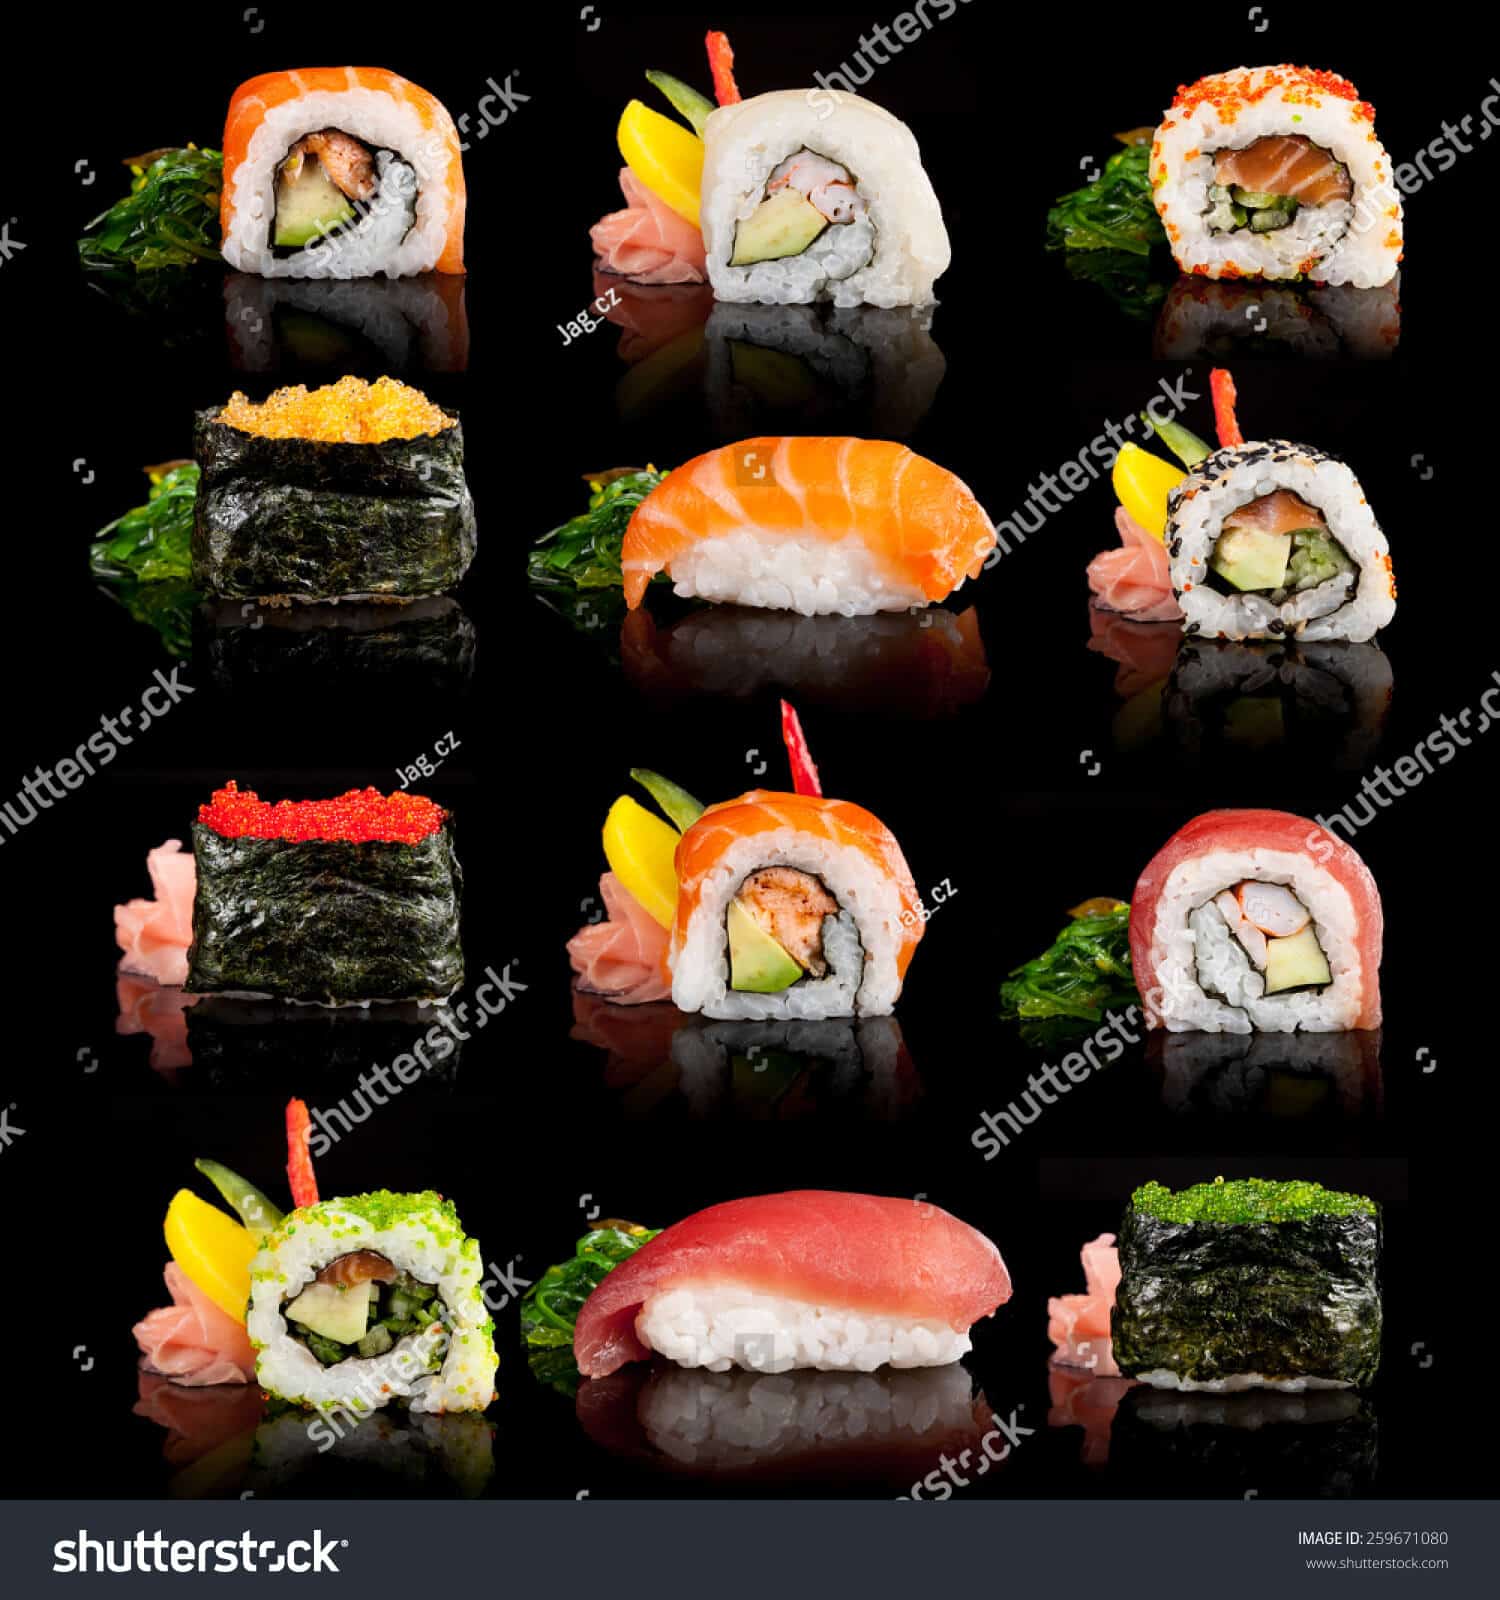 447.415 ảnh Sushi tuyệt đẹp giá siêu rẻ dành cho bạn